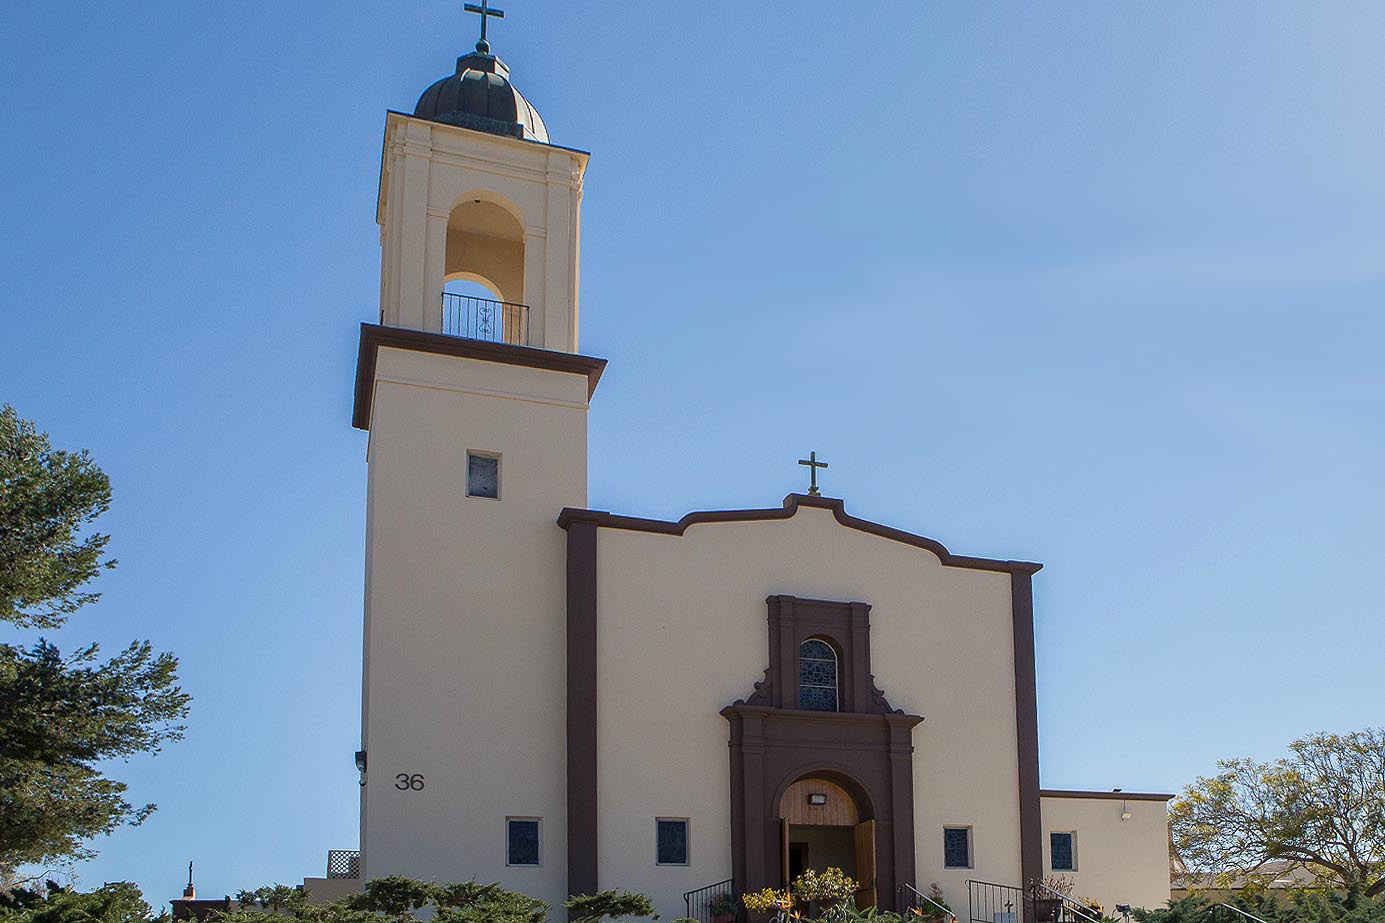 St Pius X, Chula Vista, CA